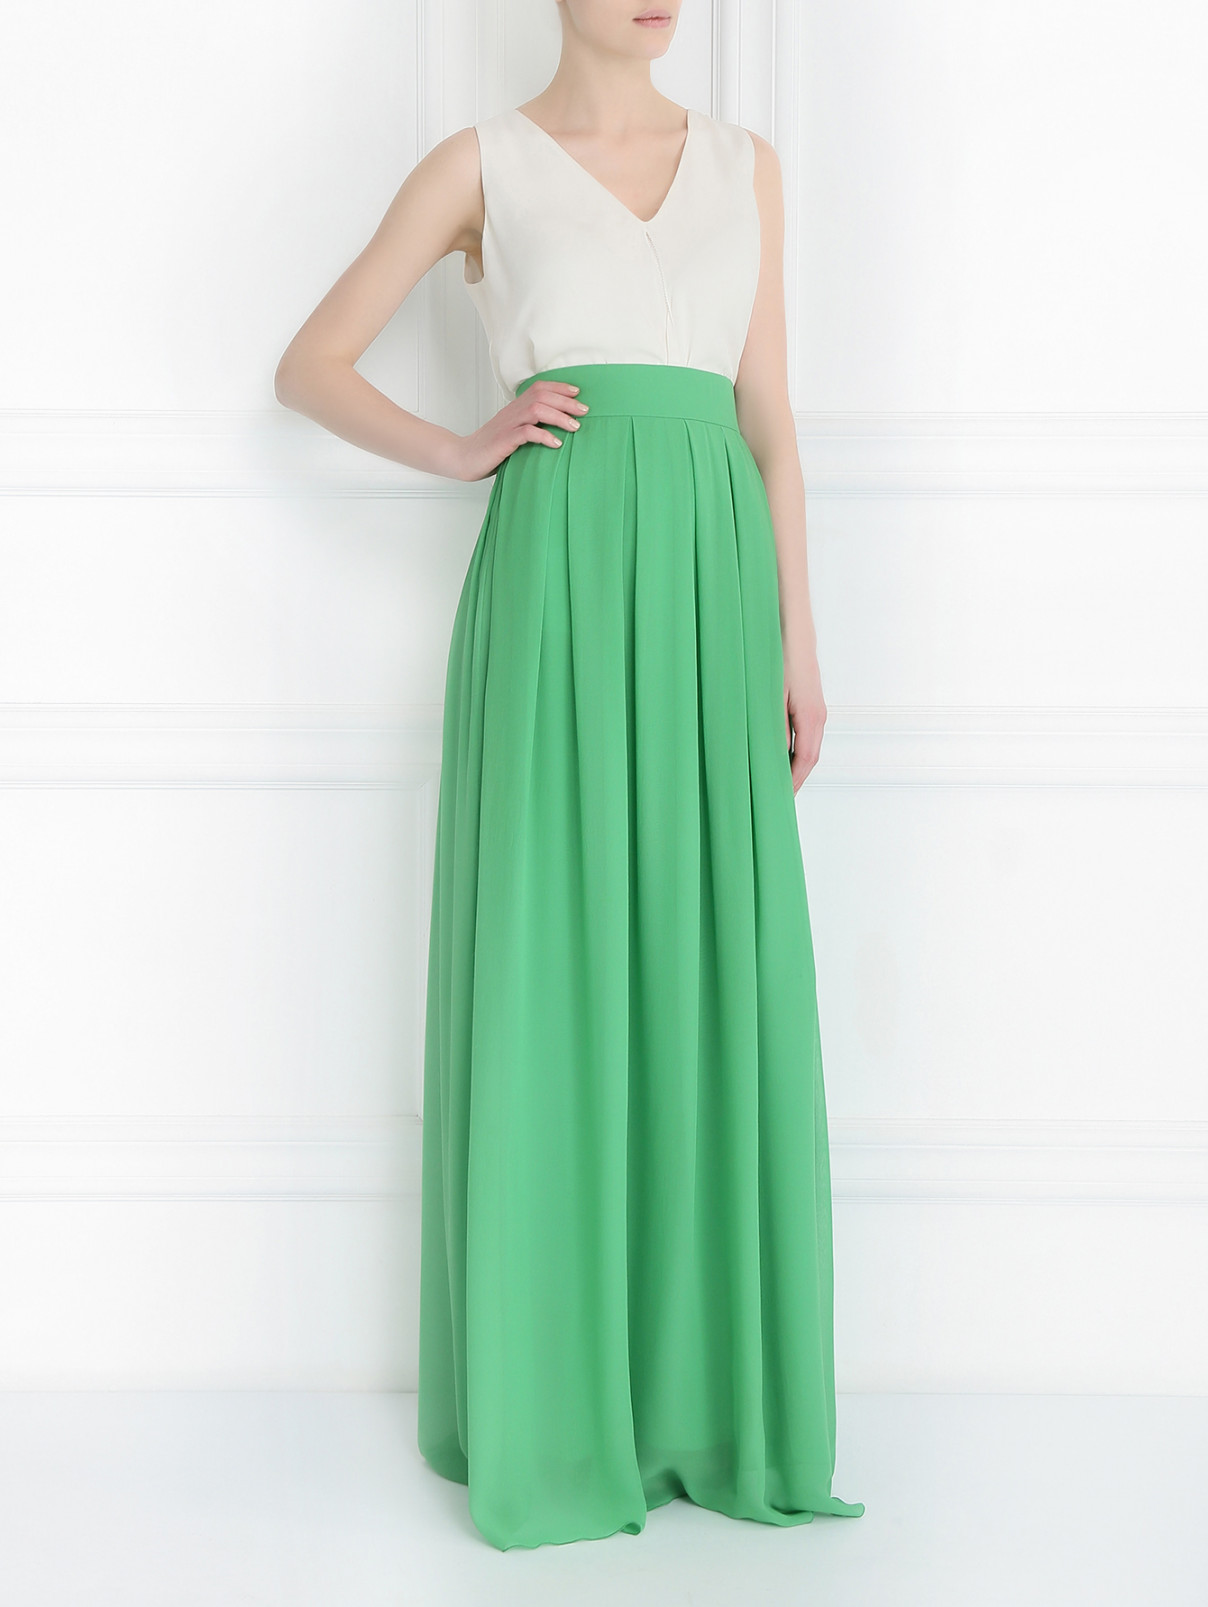 Плиссированная юбка-макси Ermanno Scervino  –  Модель Общий вид  – Цвет:  Зеленый